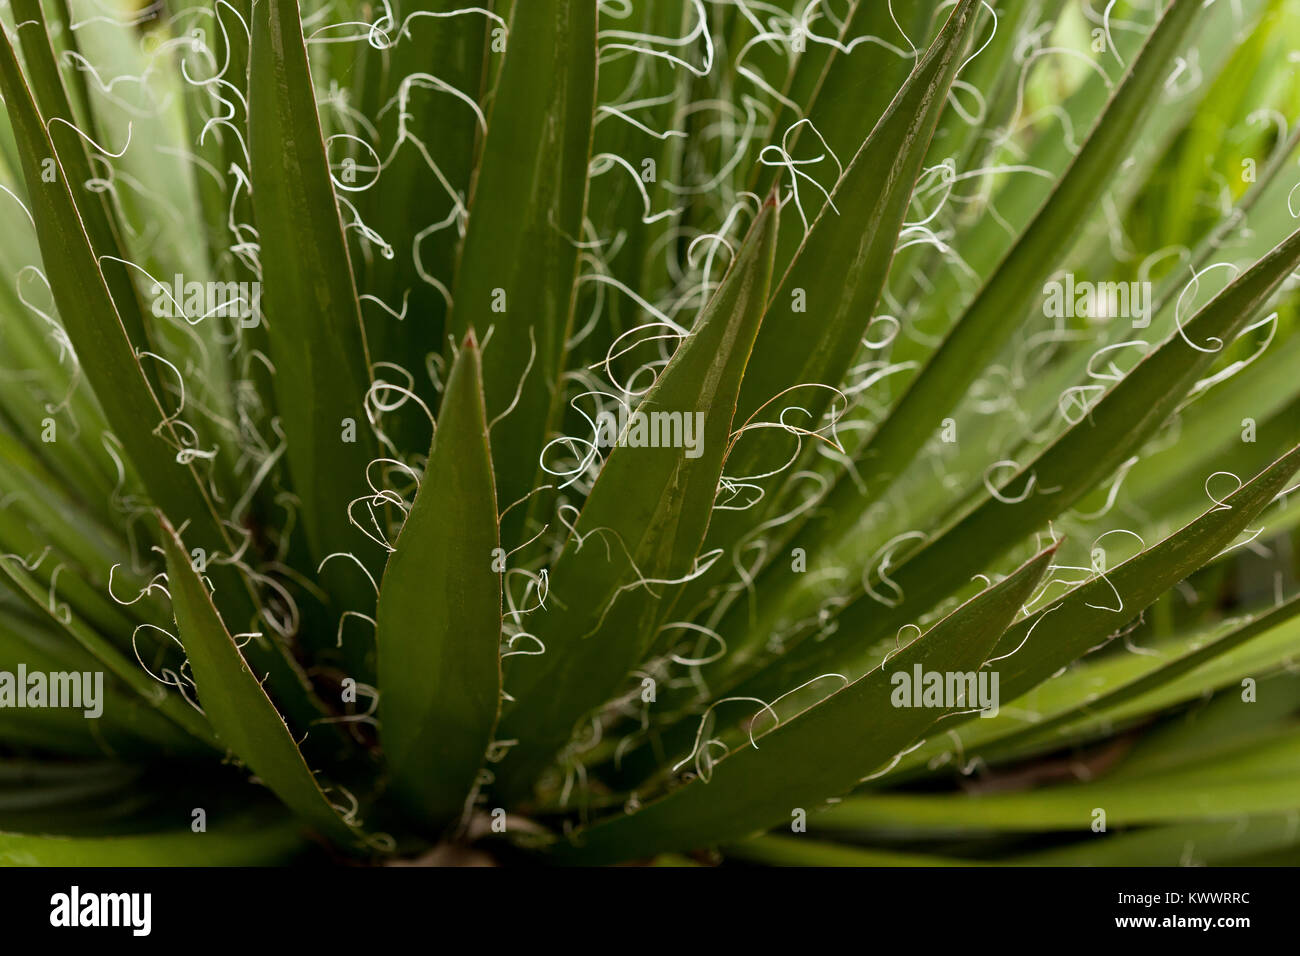 Peludo frondes de un agave Filifera retroiluminado con rosca vegetales de hoja Foto de stock